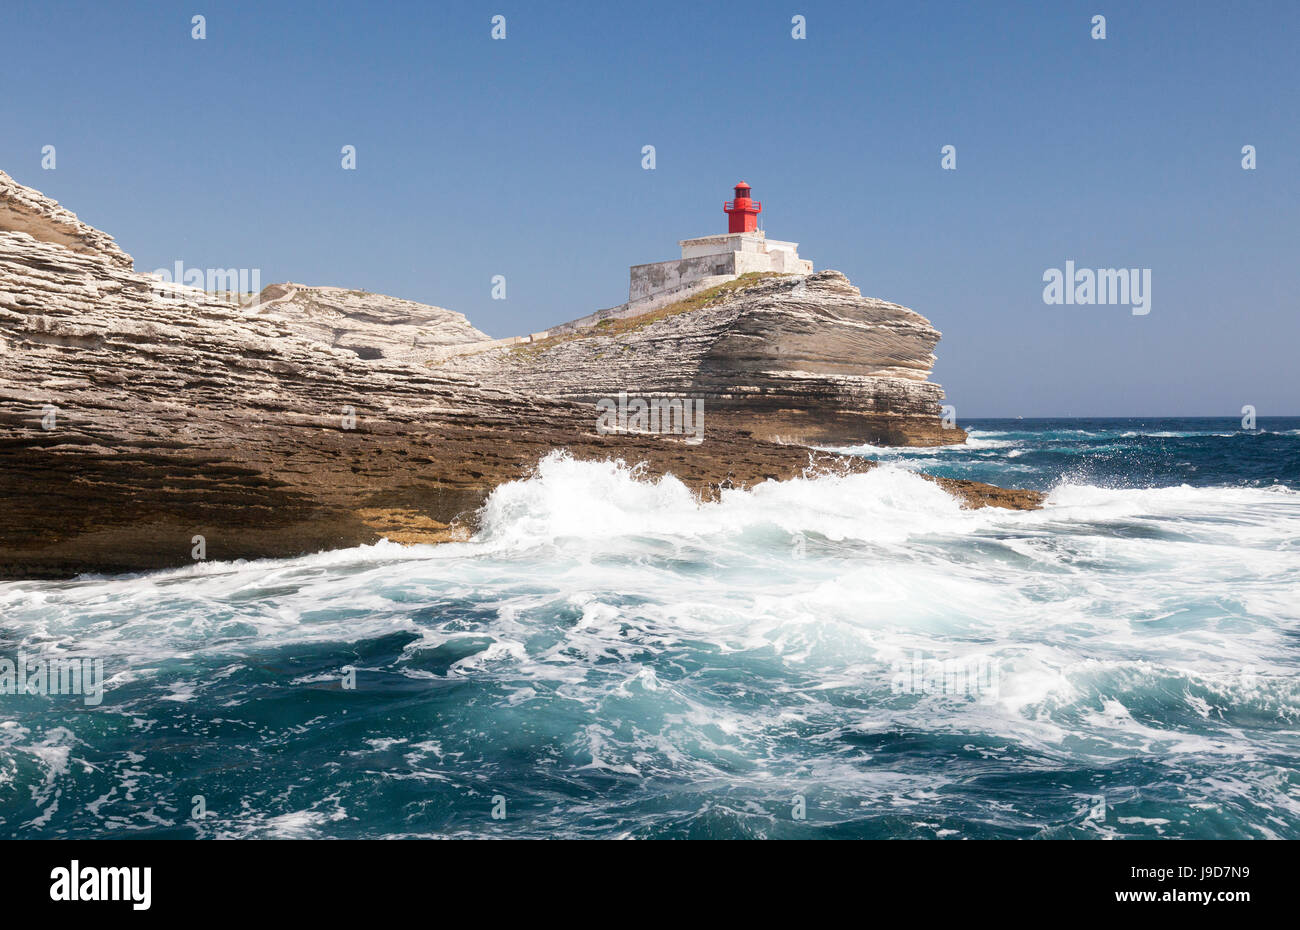 Onde del mare turchese schiantarsi sul granito bianche scogliere e del faro, Isole Lavezzi, Bonifacio, Corsica, Francia Foto Stock